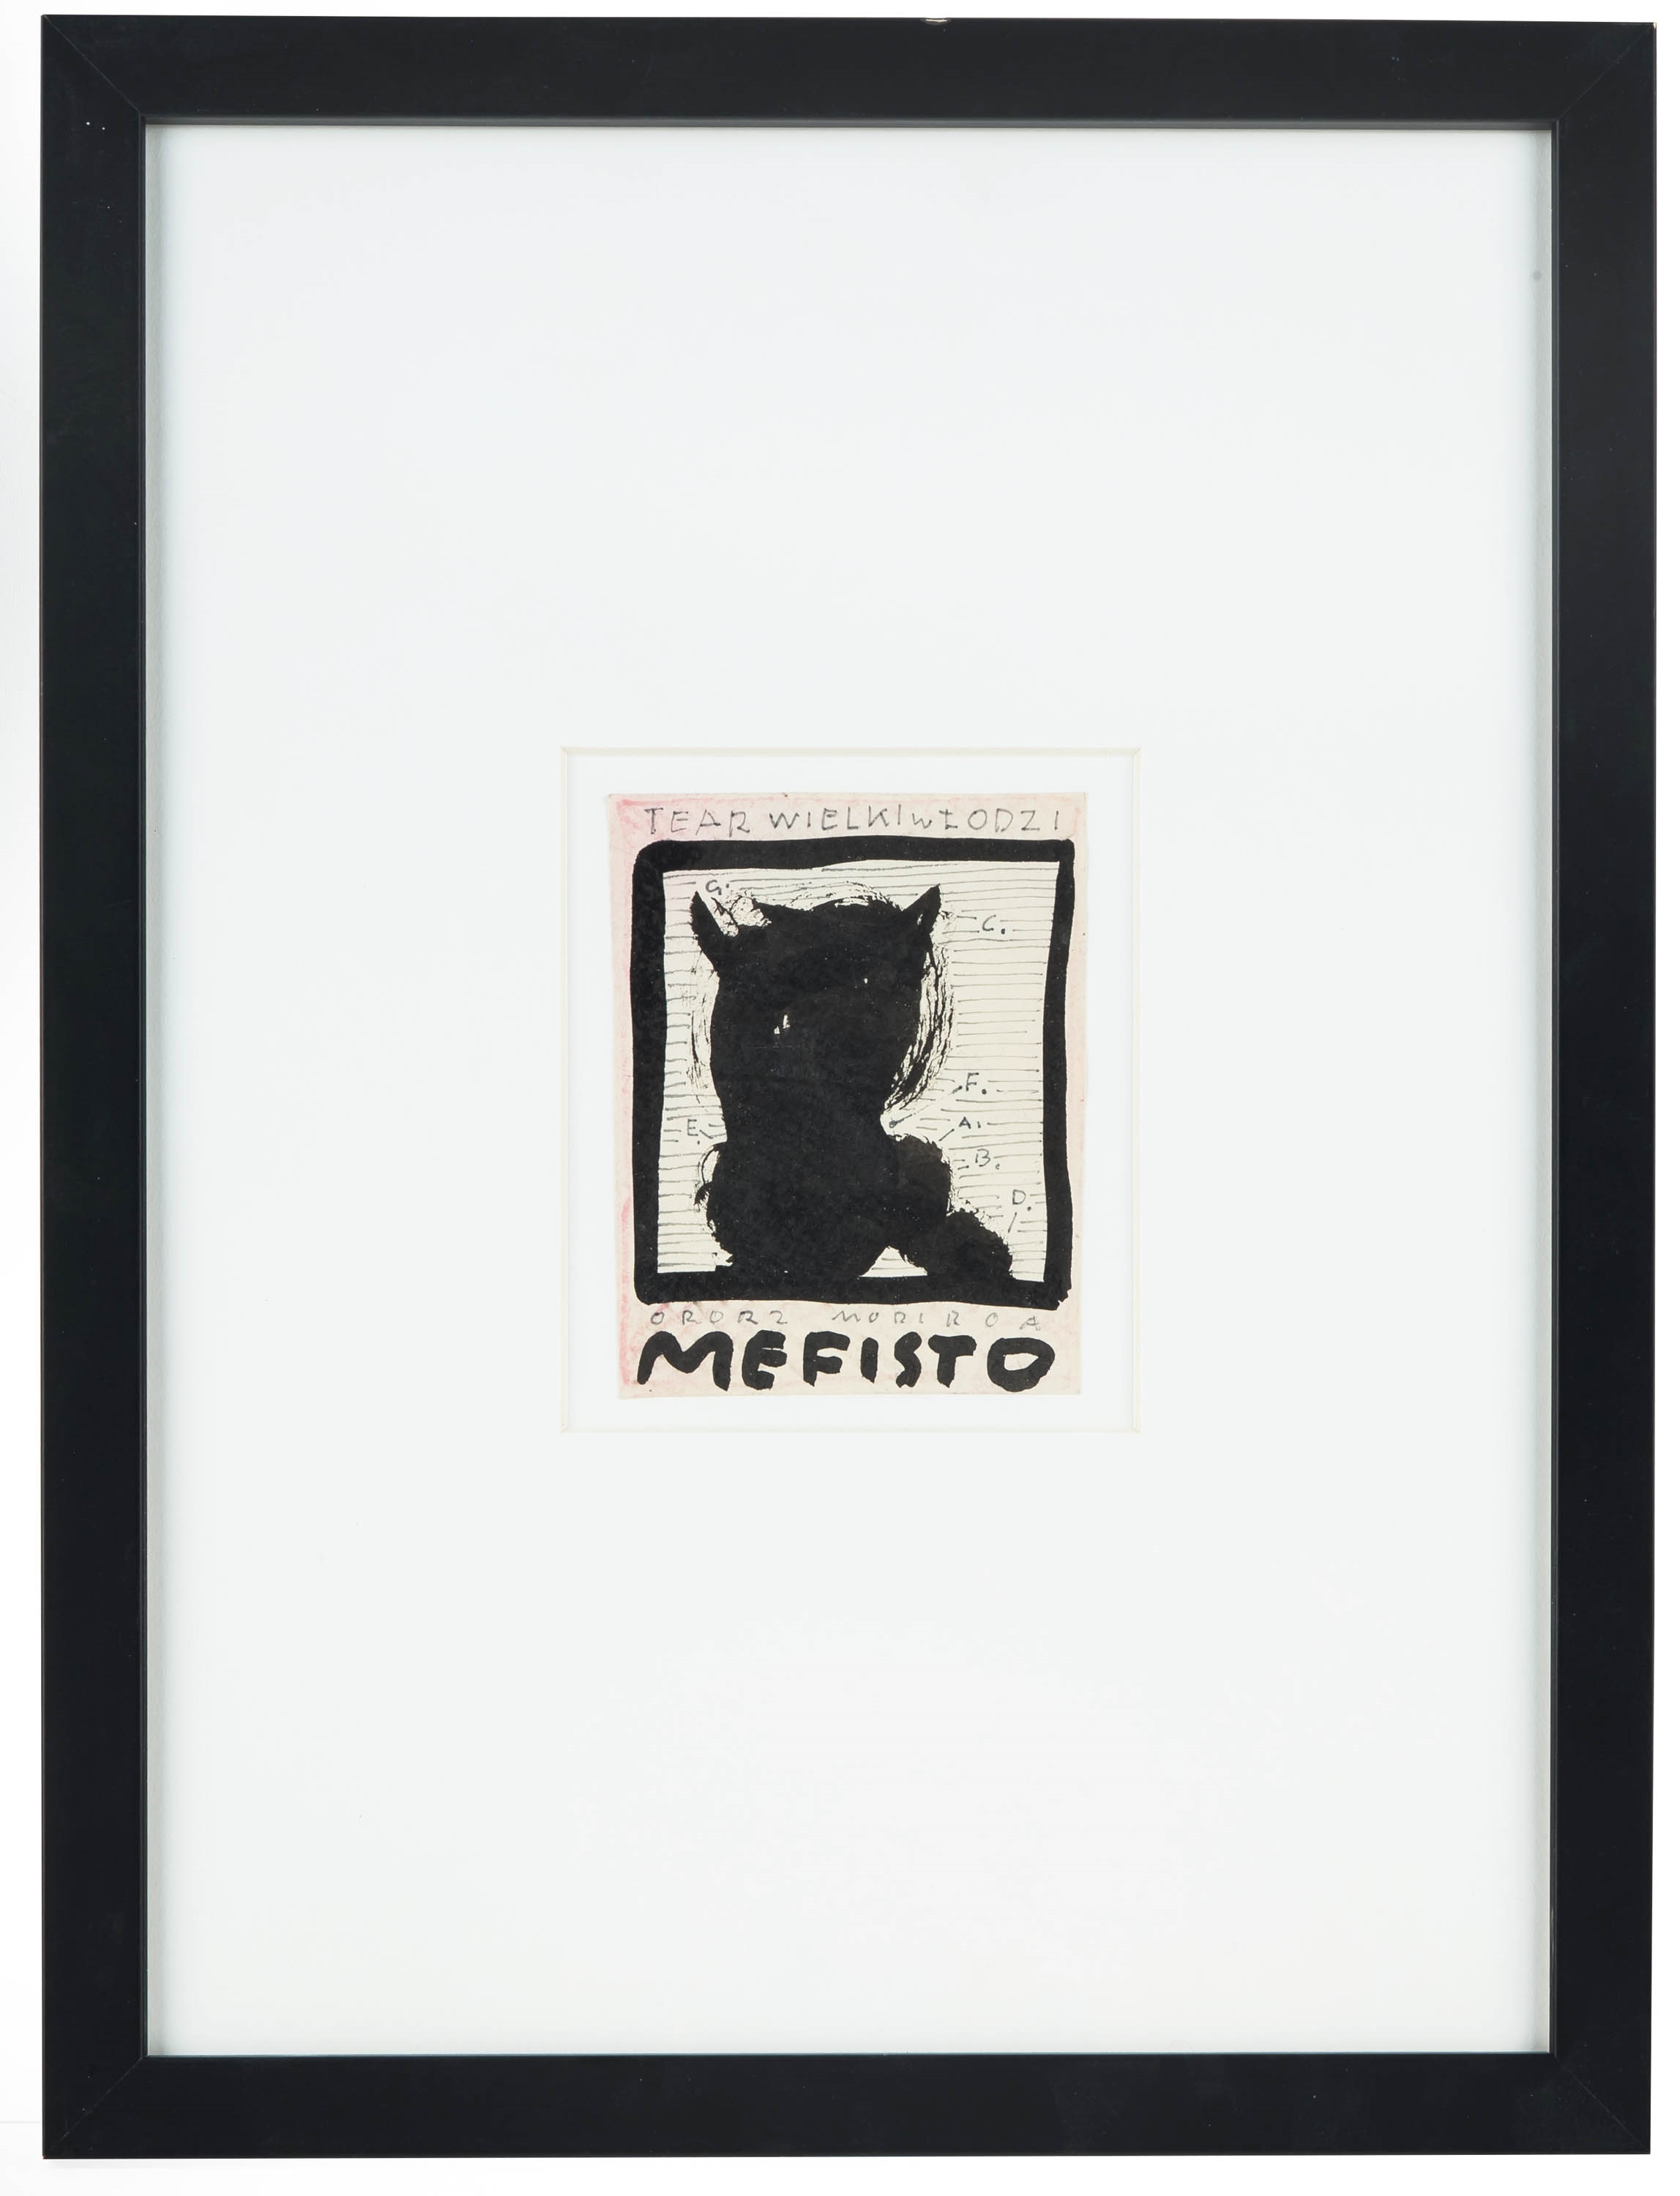 Artwork by Franciszek Starowieyski, Projekt plakatu do Mefista, Made of ink, paper